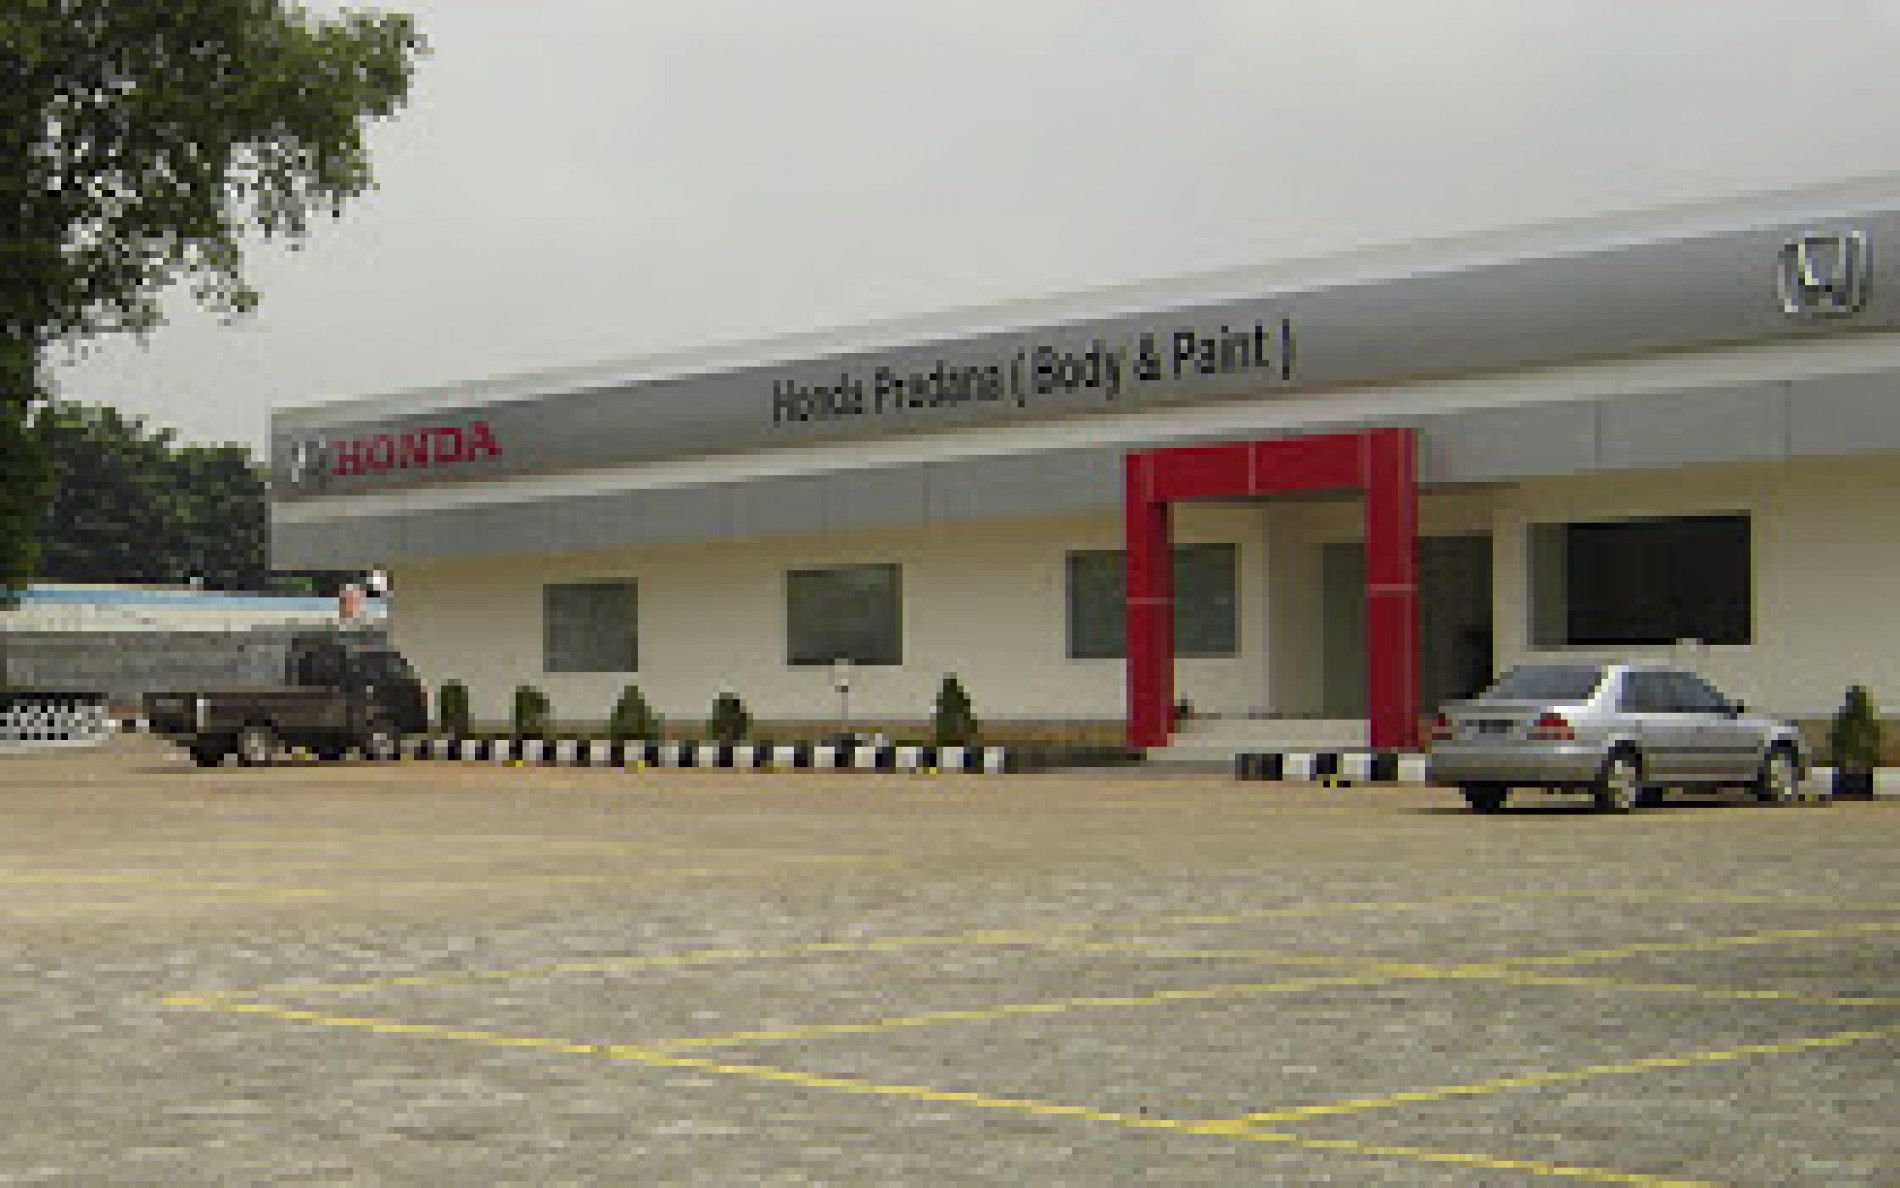 Honda Pradana (Body & Paint), (PT. Ambara Karya Pradana)